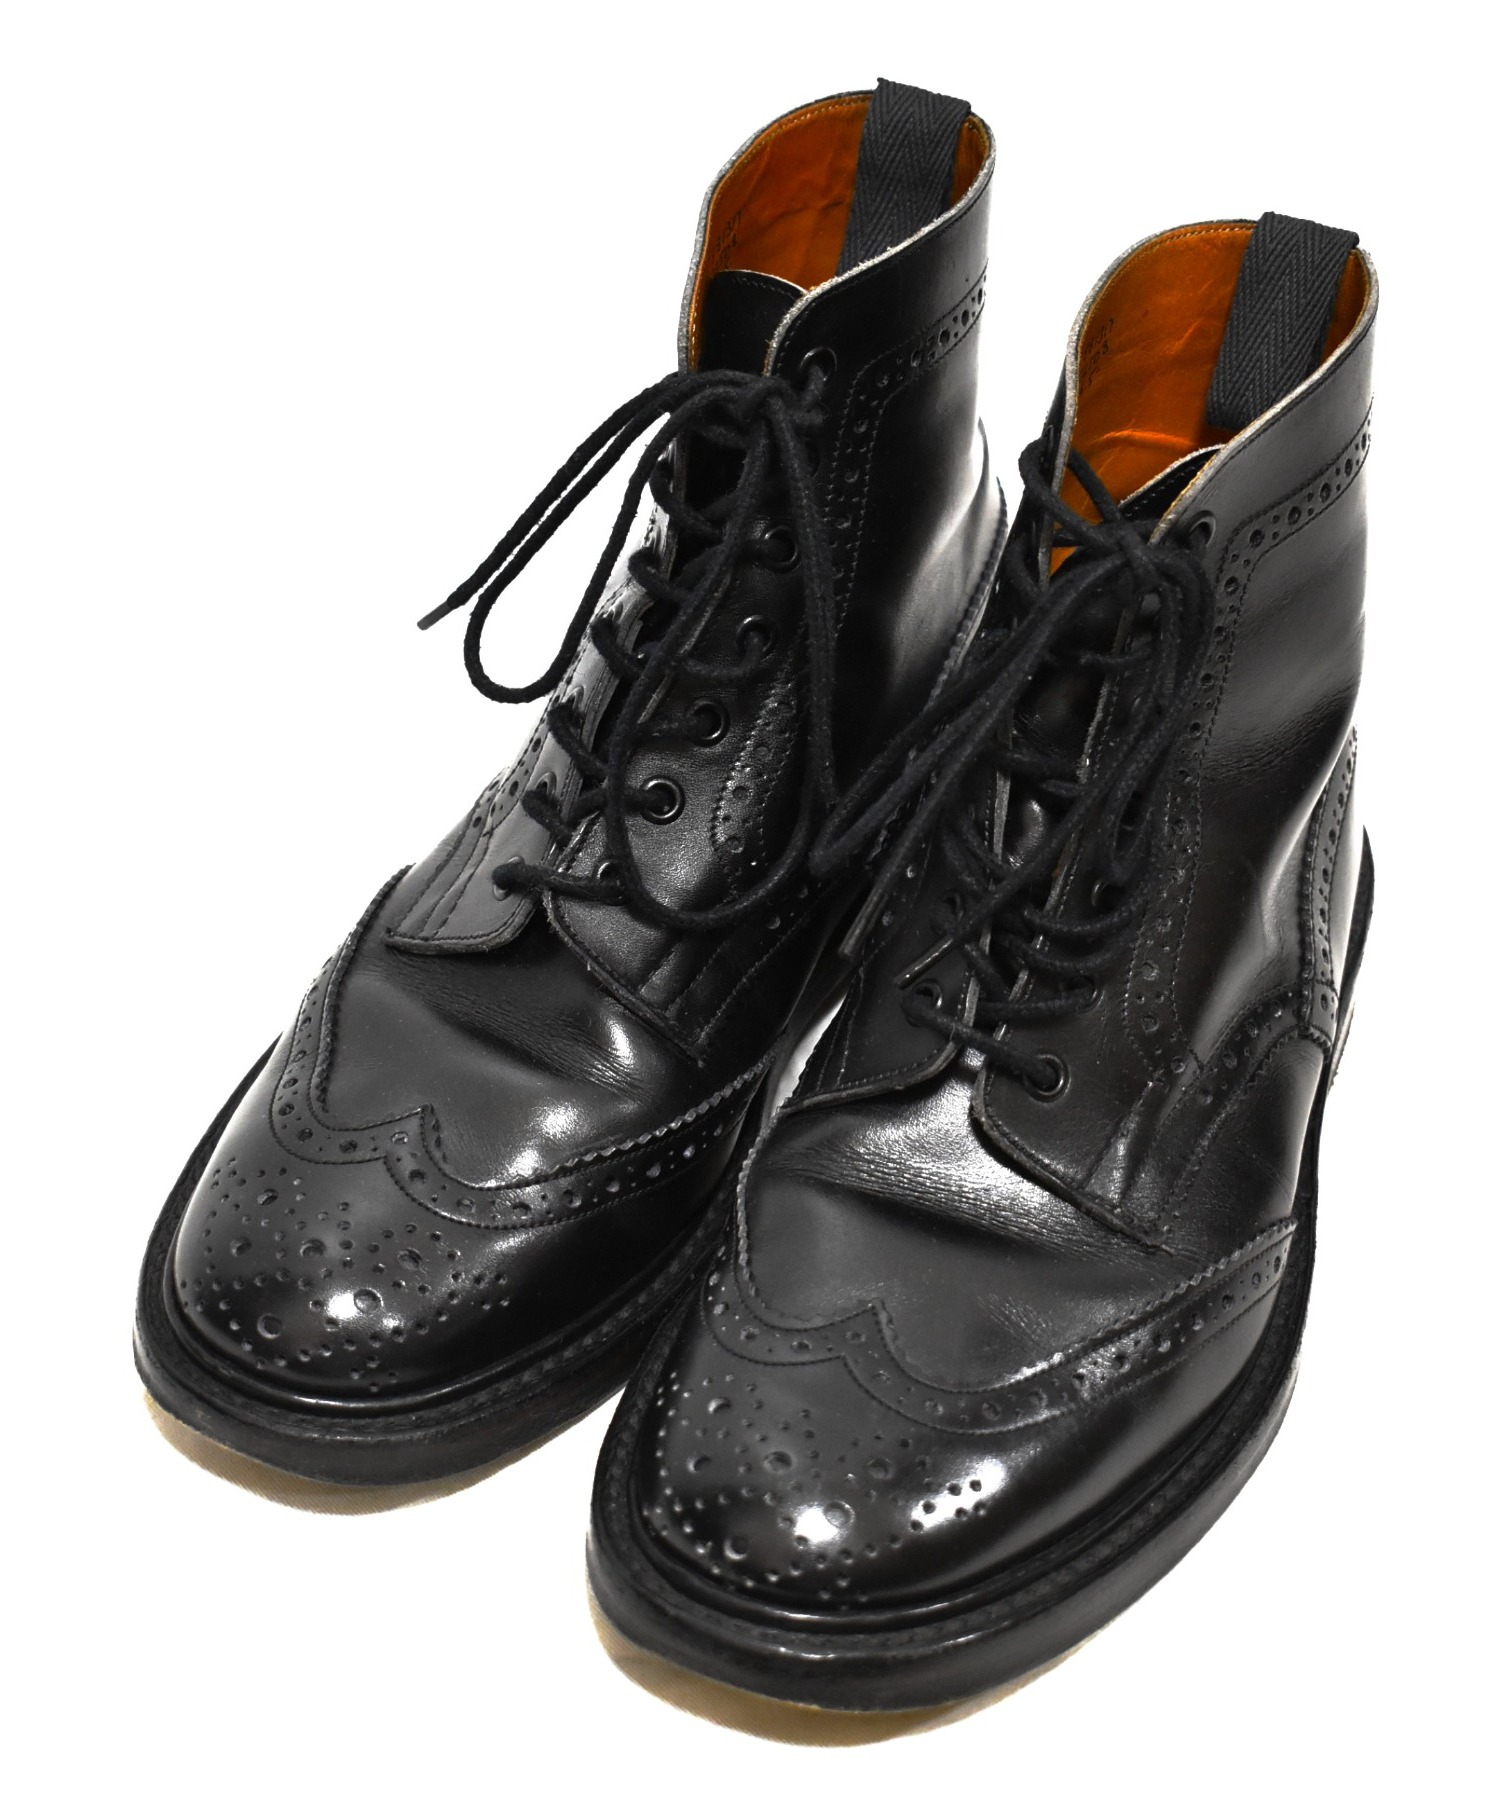 【中古・古着通販】Tricker’s (トリッカーズ) モールトンカントリーウィングチップブーツ ブラック サイズ:8.5 M2508